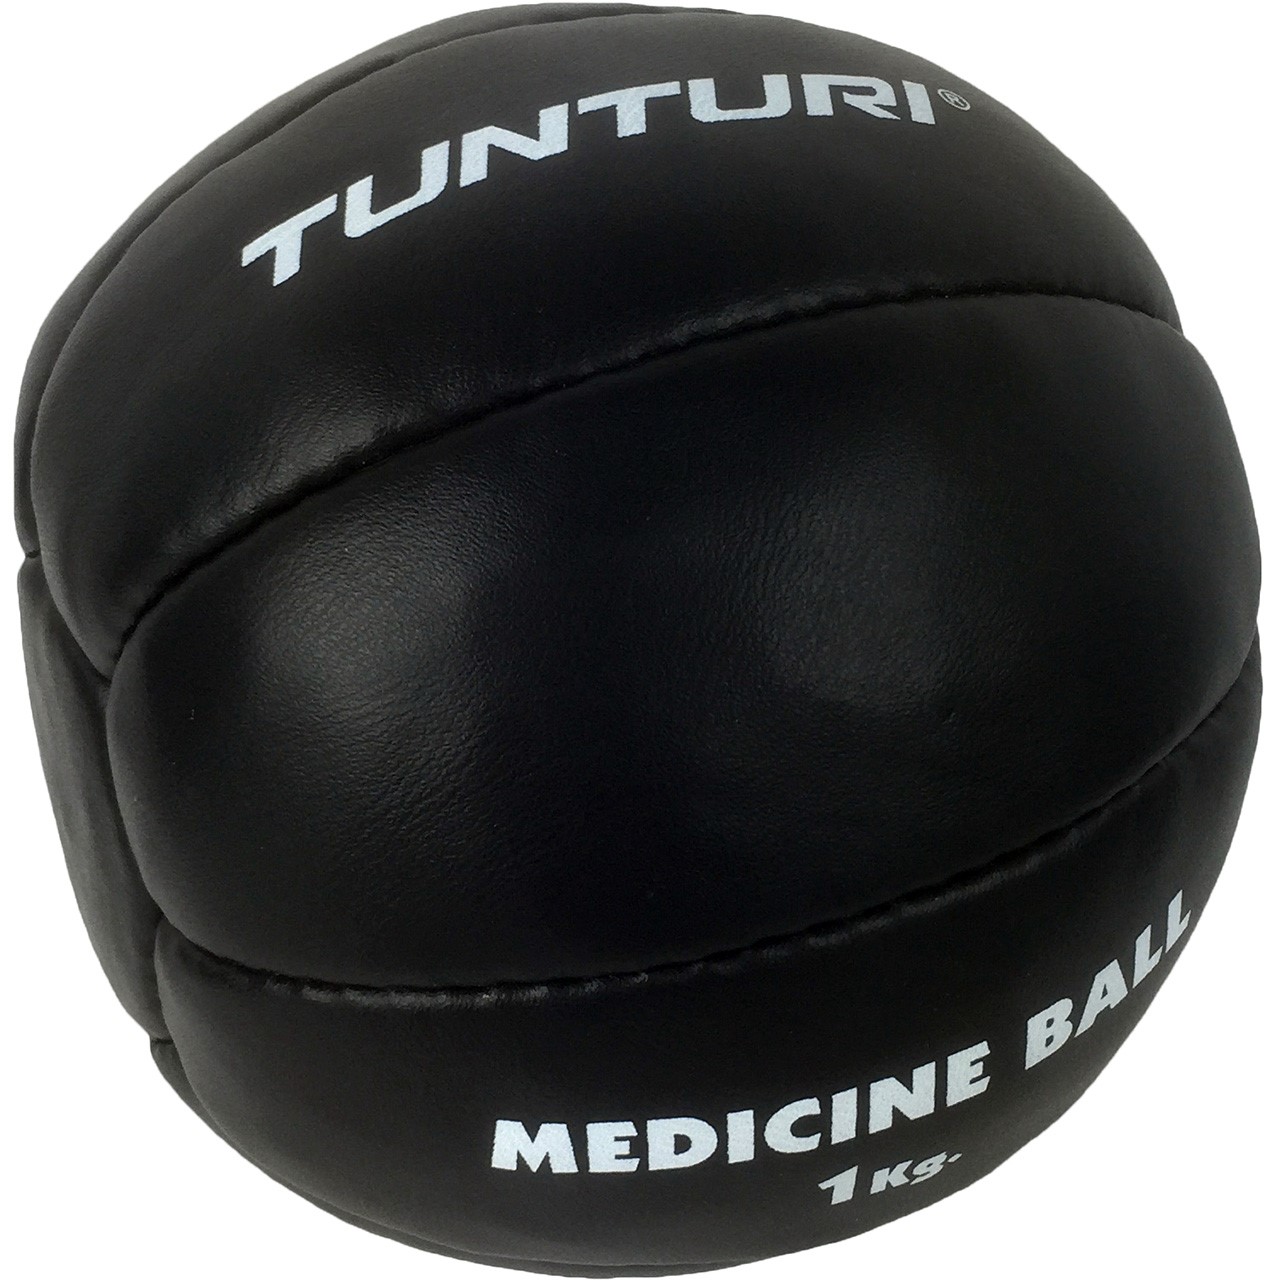 Tunturi Medizin Ball Black 1 kg